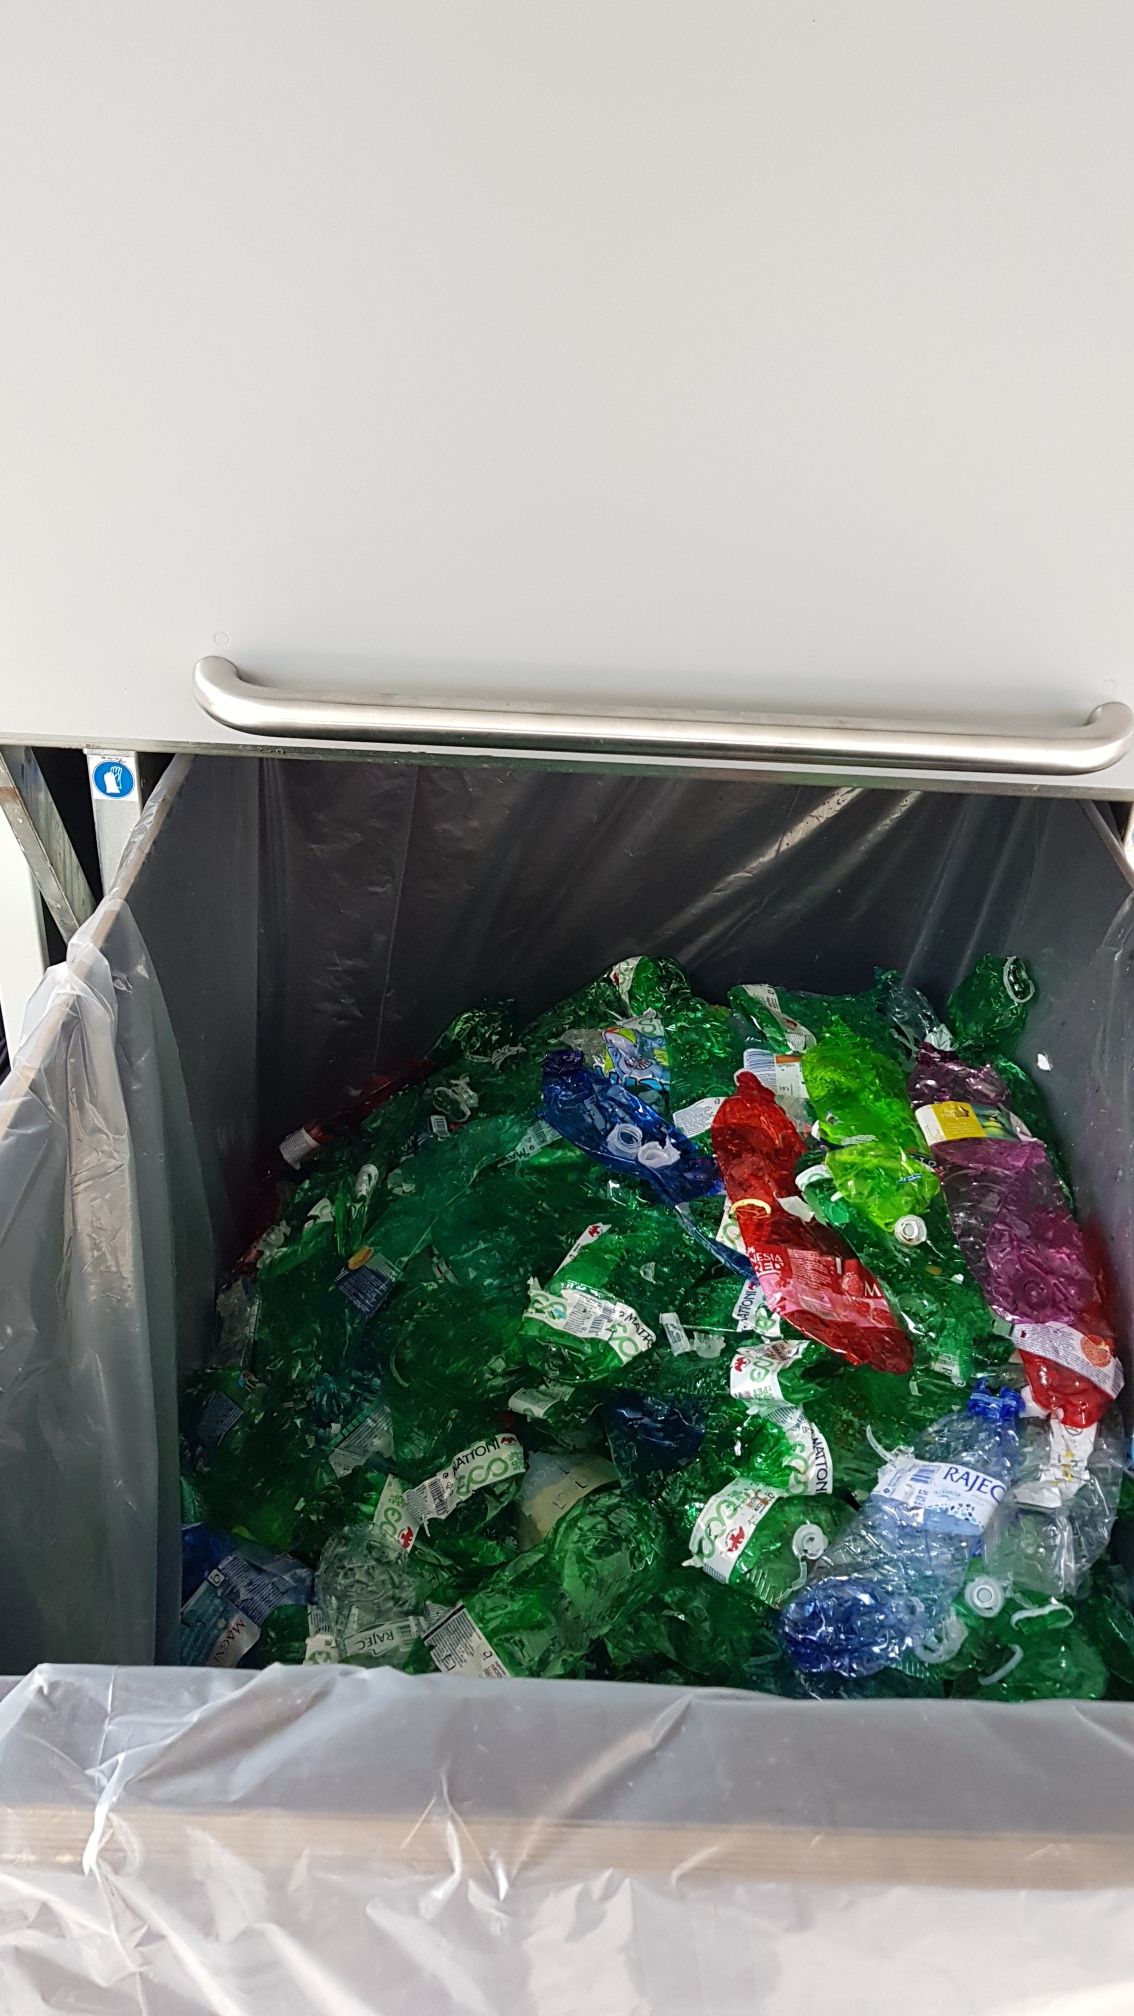 Výkupní automat na PET lahve Život PET lahve lahev plast recyklace KMV